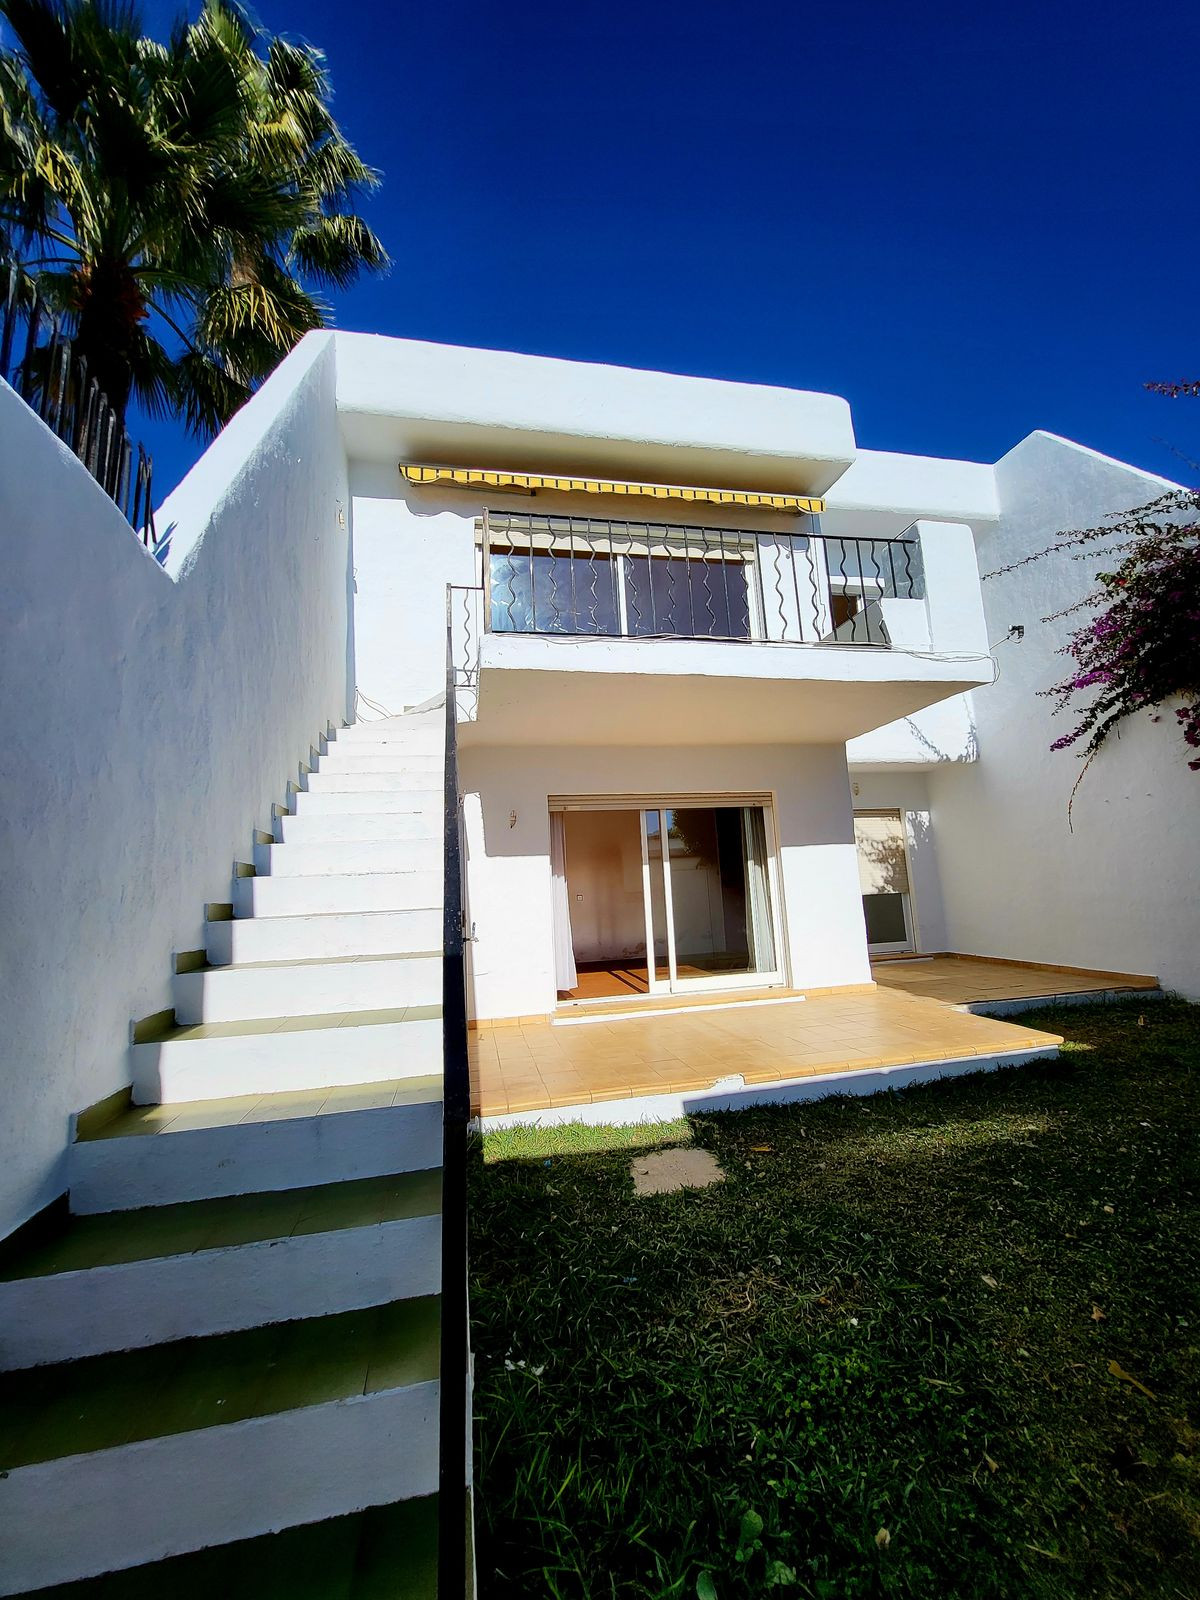 2 Dormitorios Casa Adosado  En Venta Cabopino, Costa del Sol - HP4591423